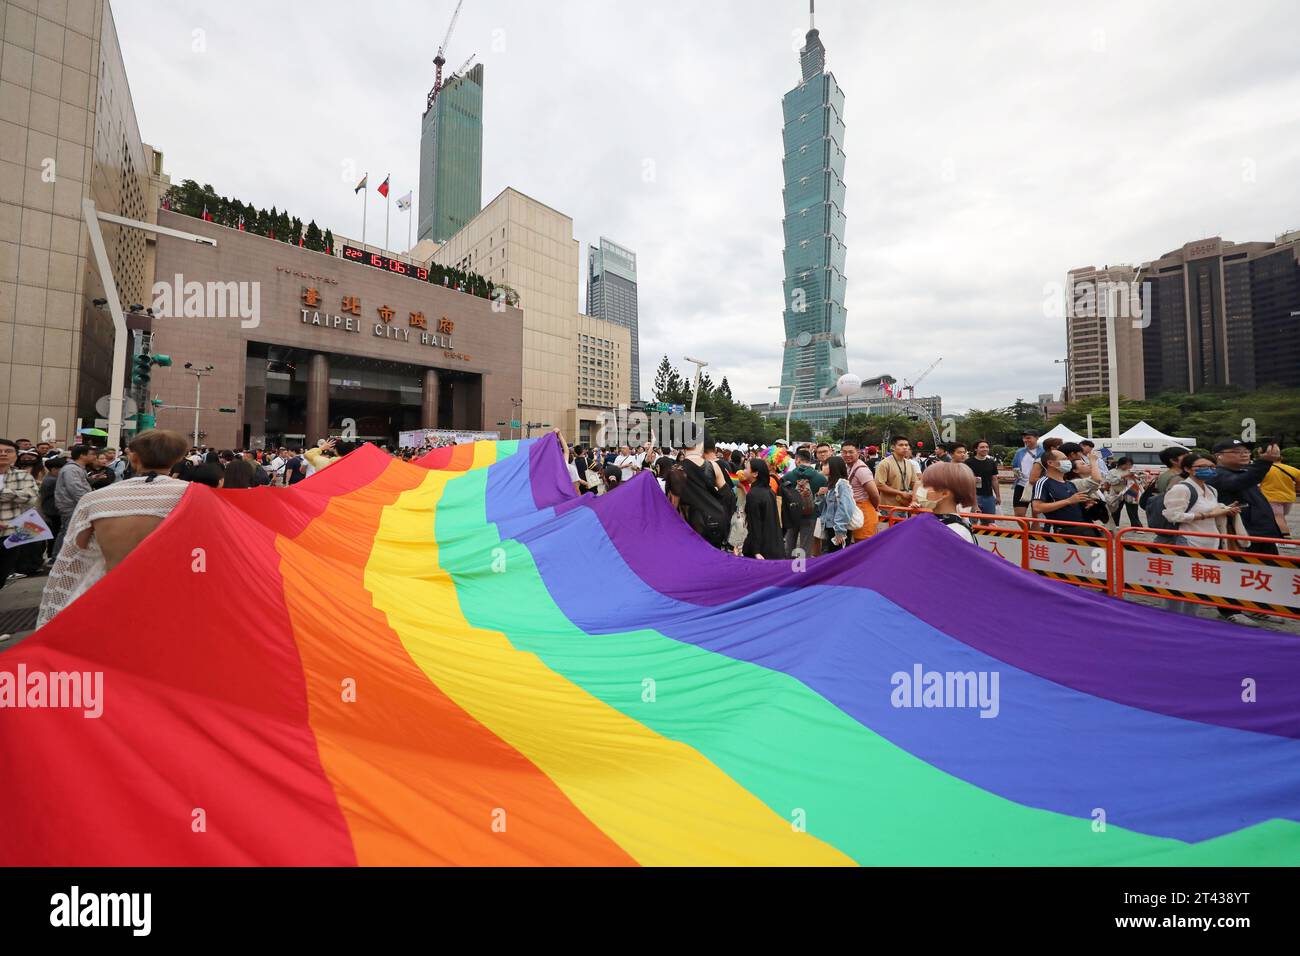 Taipeh, Taiwan. Oktober 2023. Oktober 2023. Taipeh, Taiwan. Eine riesige Regenbogenfahne führt die Taiwan Pride Parade vor Taipeh 101 in Taipeh, Taiwan. Schätzungsweise 200.000 Menschen wurden erwartet, die an der 21. Taiwan Pride Parade teilnehmen, und zwar aus ganz Asien und darüber hinaus. Das Thema dieses Jahres lautet Stand with Diversity. Taiwan ist bereits das fortschrittlichste asiatische County in Bezug auf LGBT-Rechte, es ist das einzige Land, das die Ehe gleichgeschlechtlicher Geschlechter bisher legalisiert hat, und es ist passend, dass sie die größte Pride Parade veranstalten. Quelle: Paul Brown/Alamy Live News Stockfoto